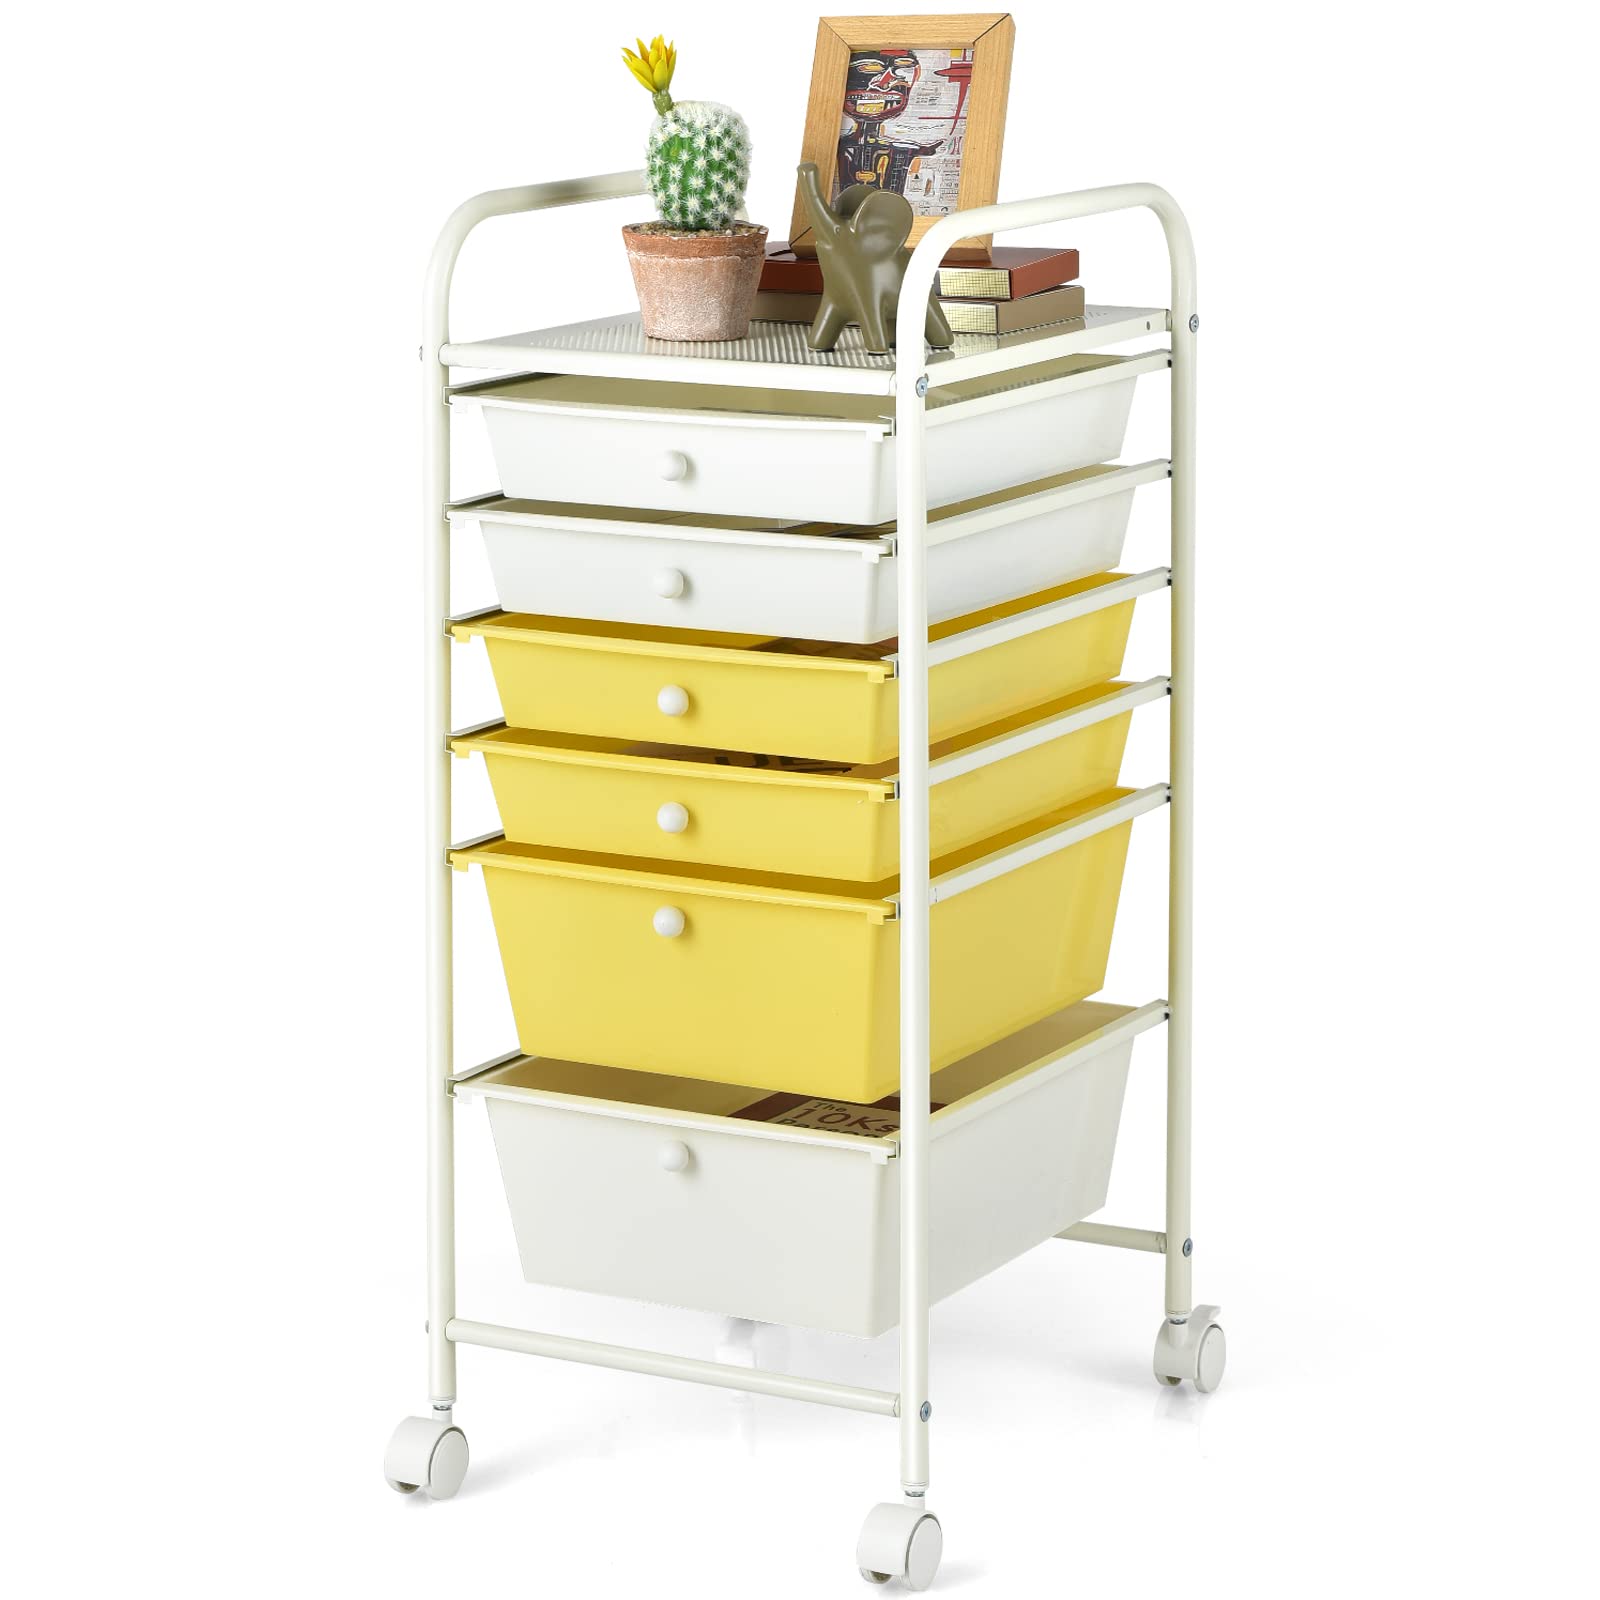  6 Storage Drawer Cart Rolling Organizer Cart, Yellow - Giantex